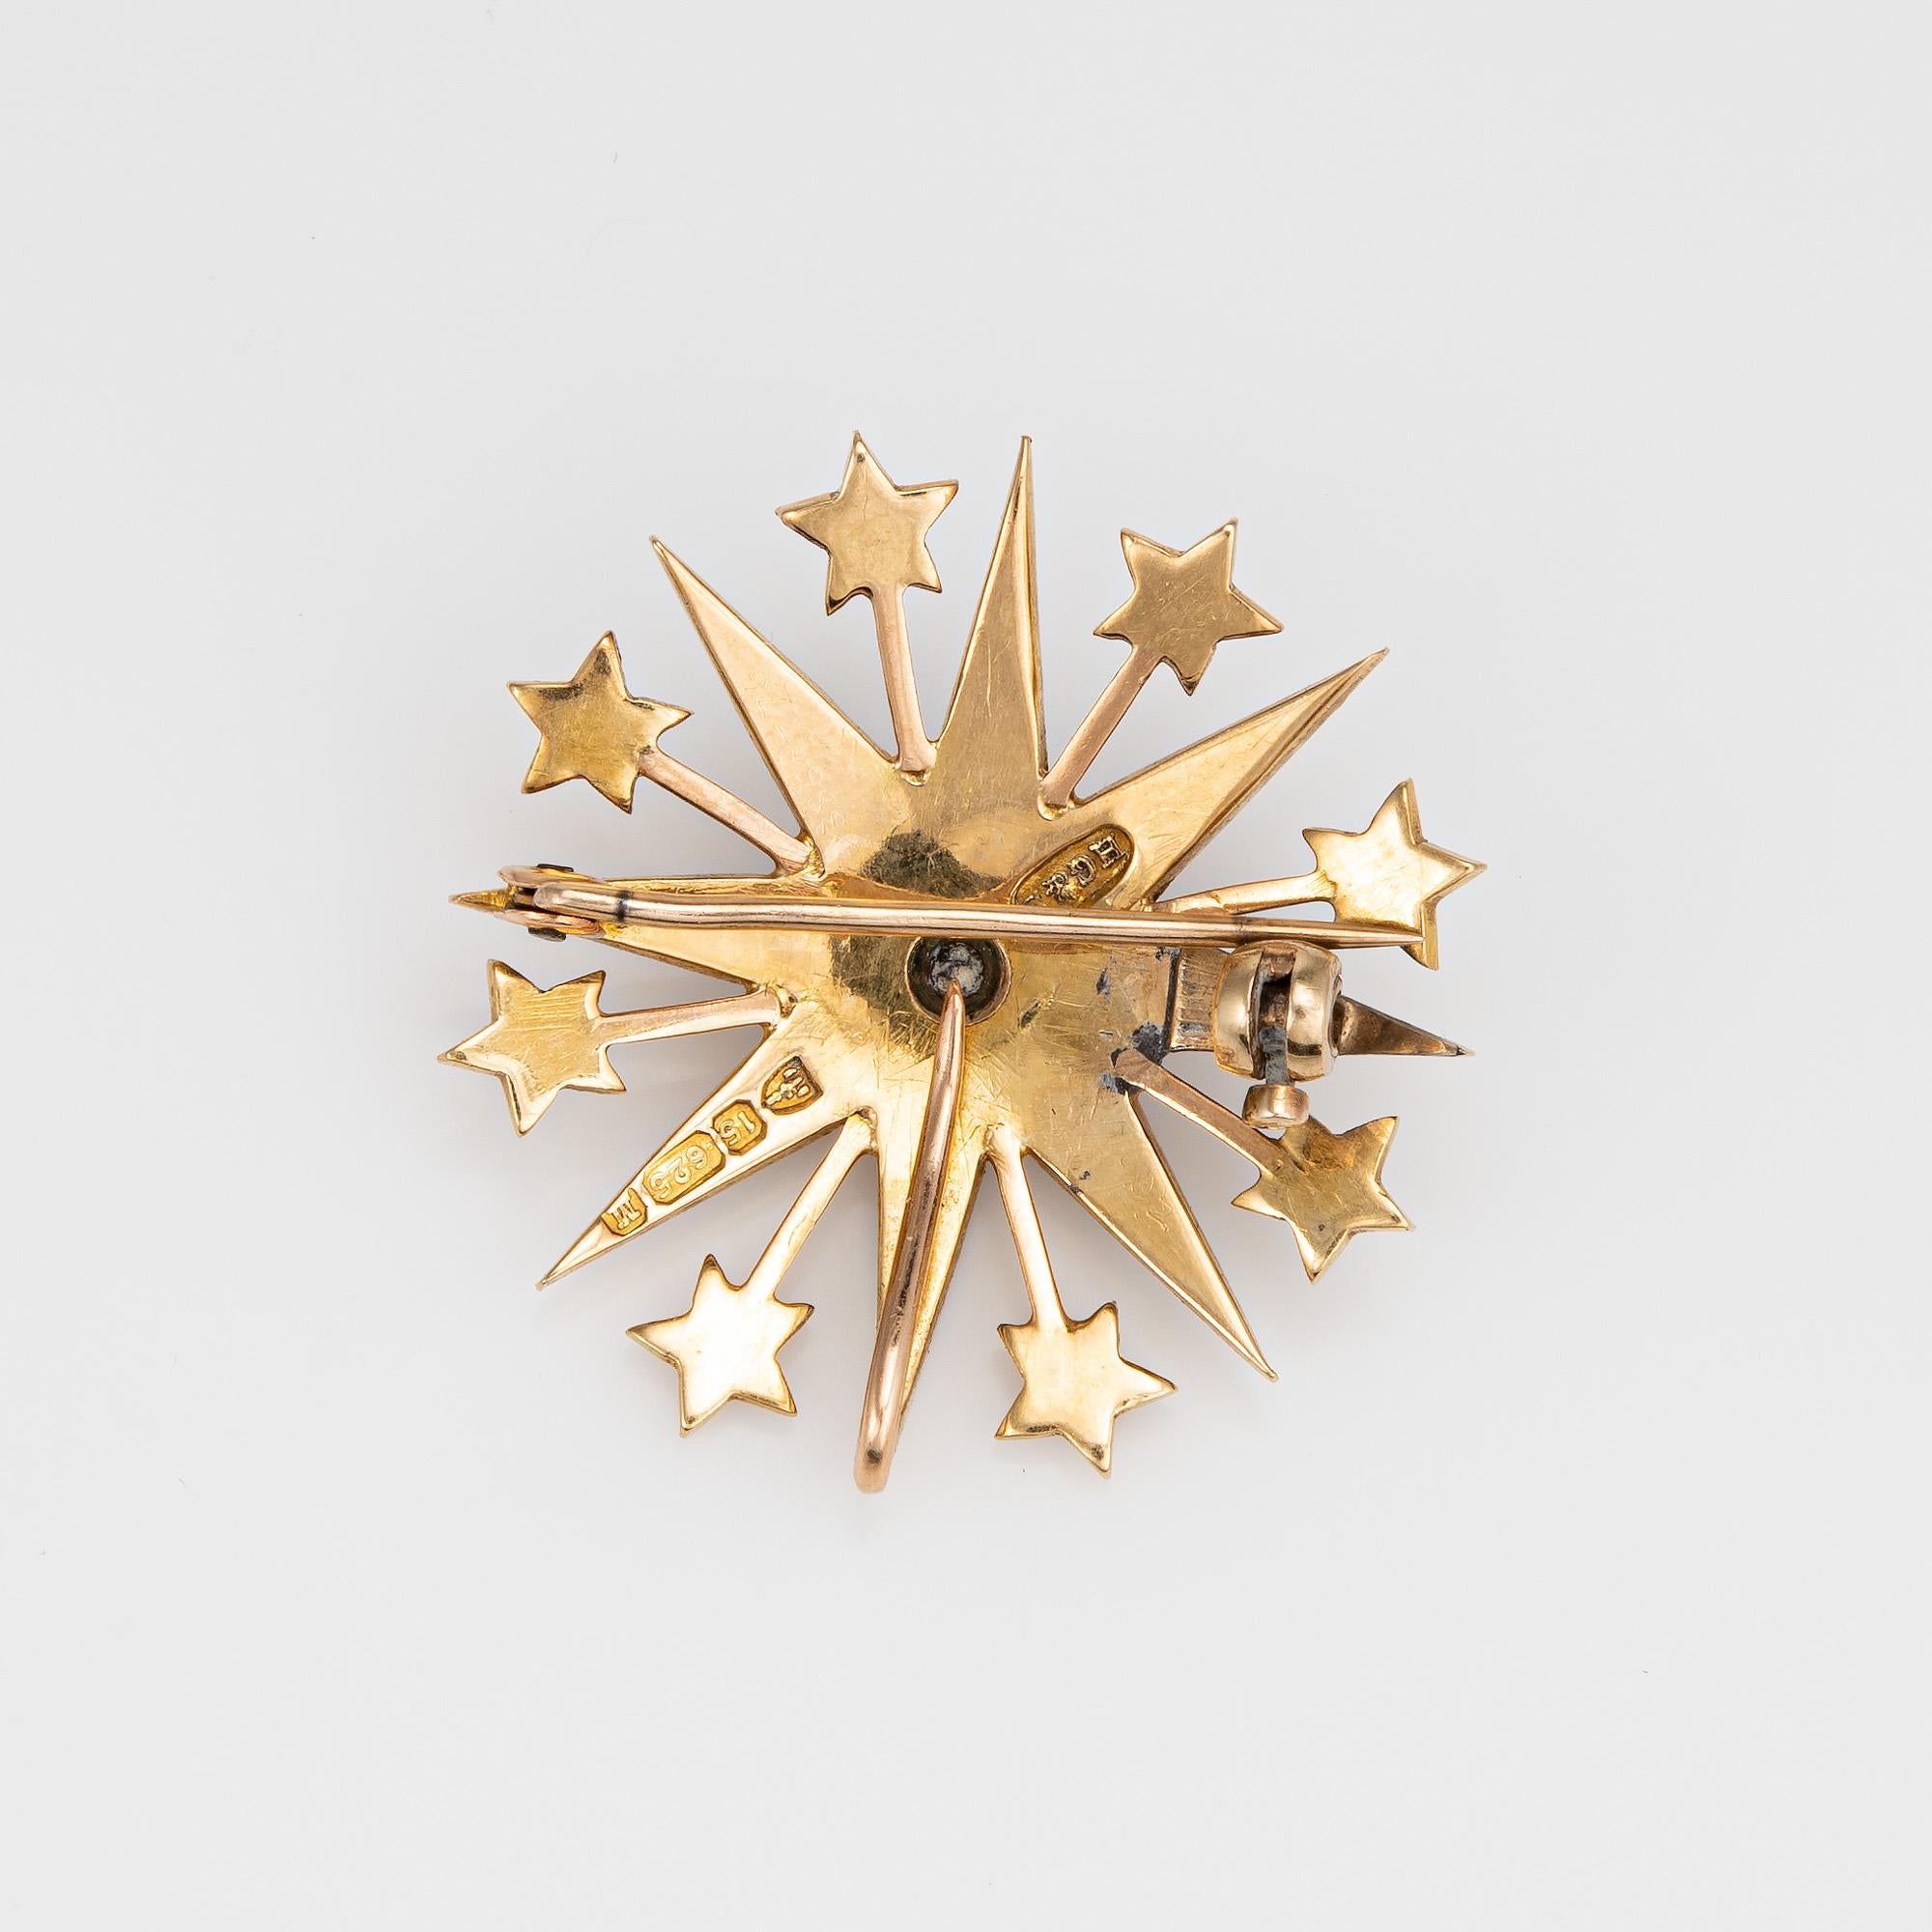 Pendentif ou broche en forme d'étoile finement détaillée de style victorien (vers 1895), réalisée en or jaune 15 carats. 

La taille des perles de culture varie de 1 mm à 2,5 mm. Les perles sont intactes et en bon état.

Le motif de l'étoile filante